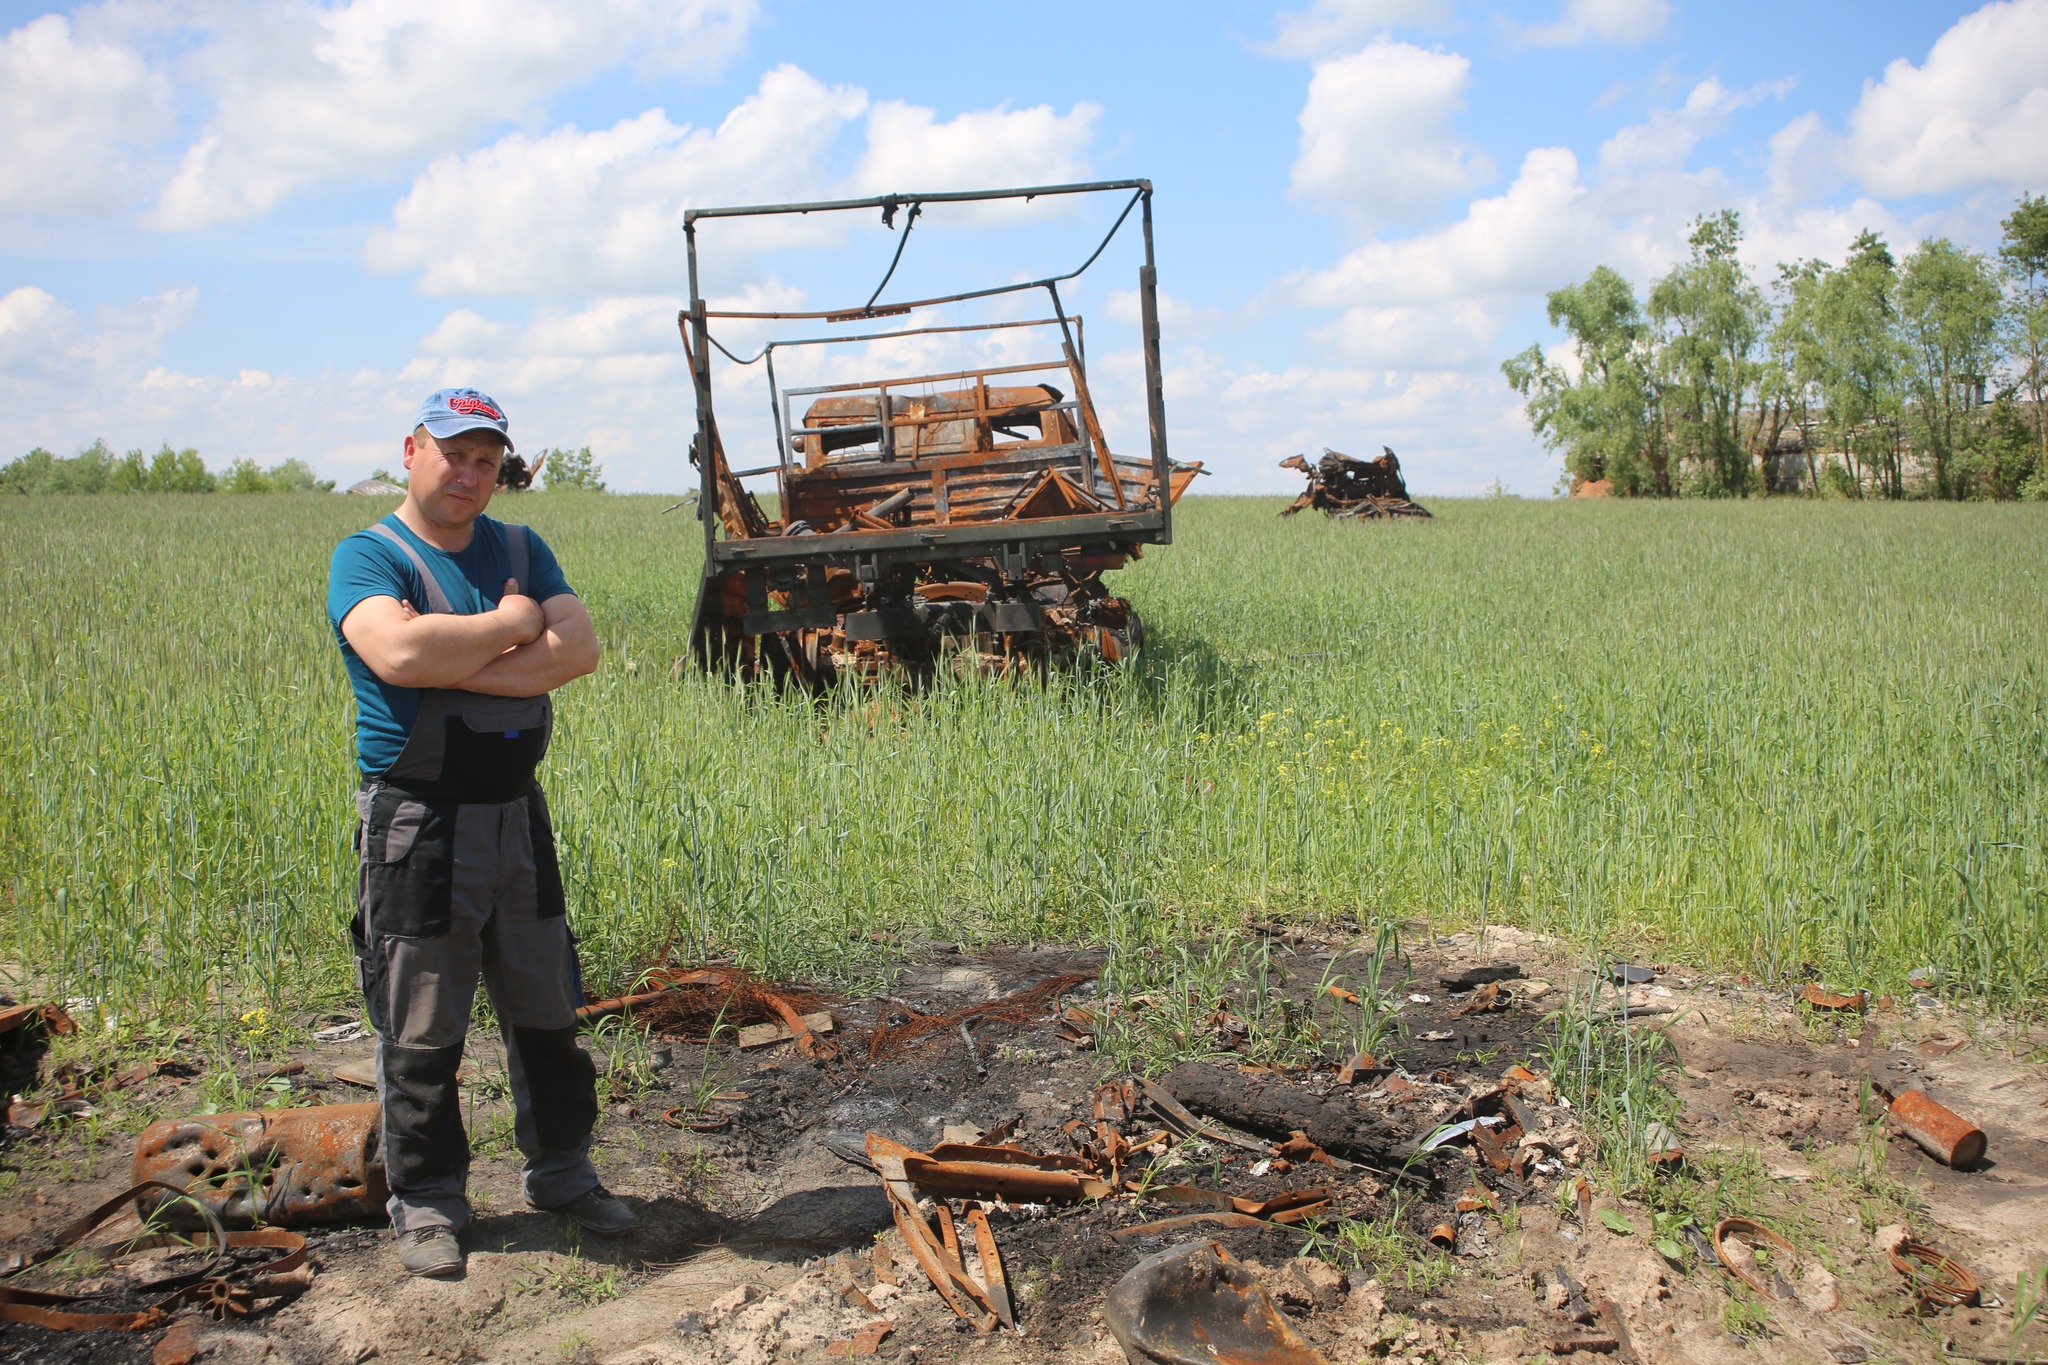 Farmer Chernihiv Oblast destroyed farm Russian forces war